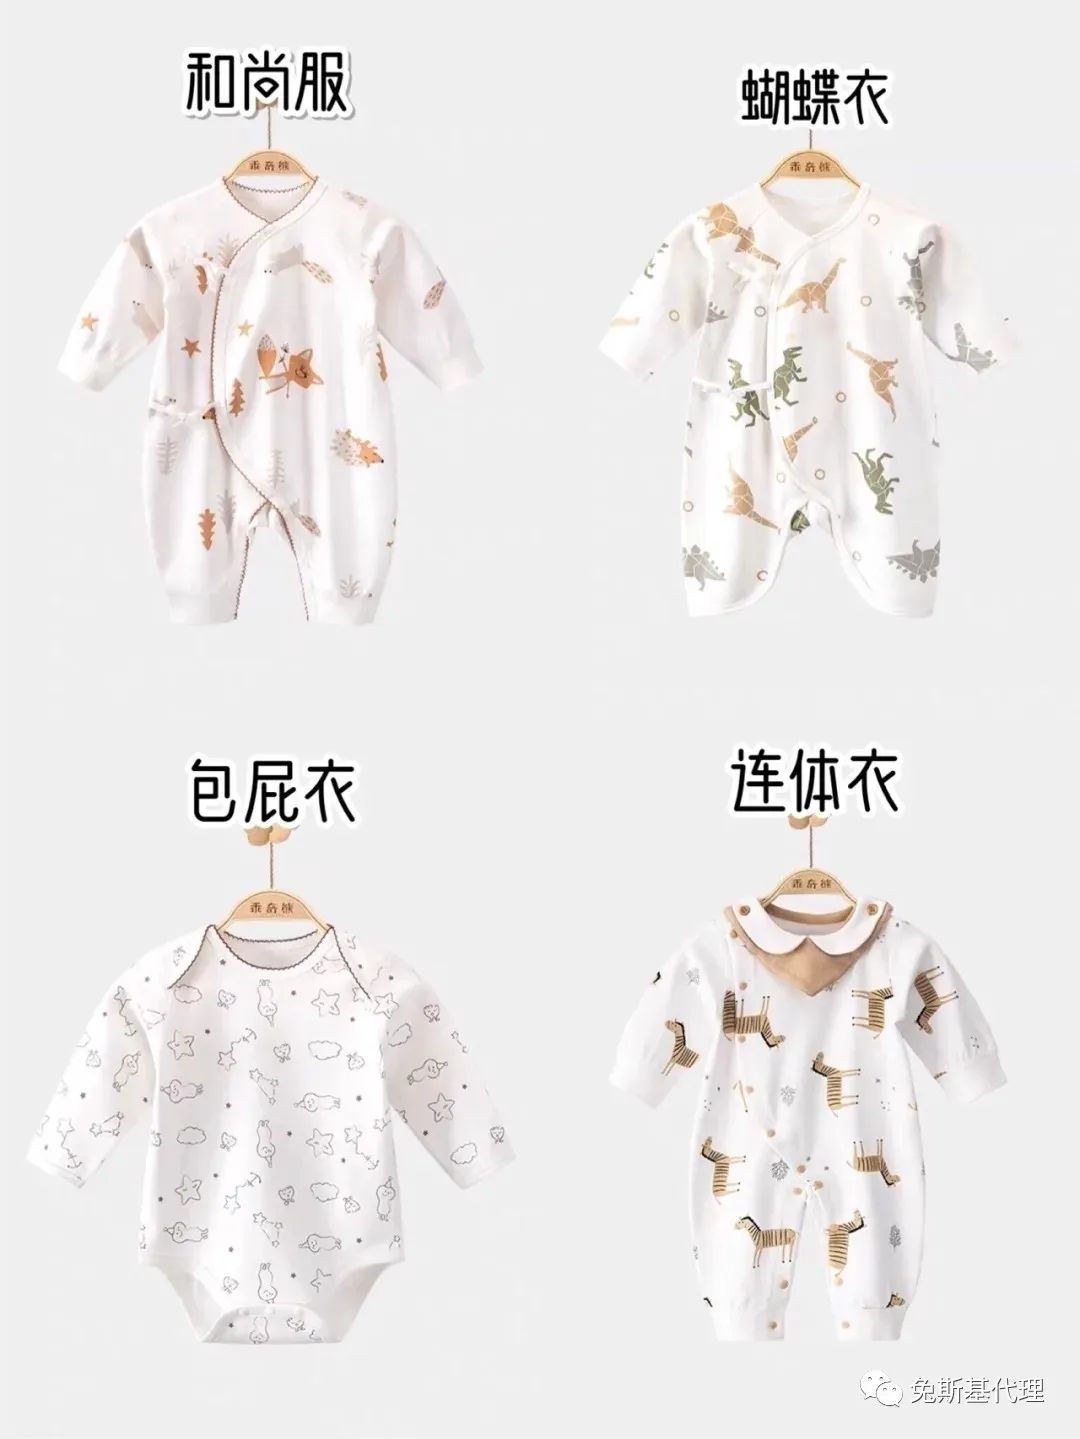 婴儿0一24月衣服尺寸表参考尺寸,宝宝连体衣详细尺寸,婴儿0一24月衣服尺寸表